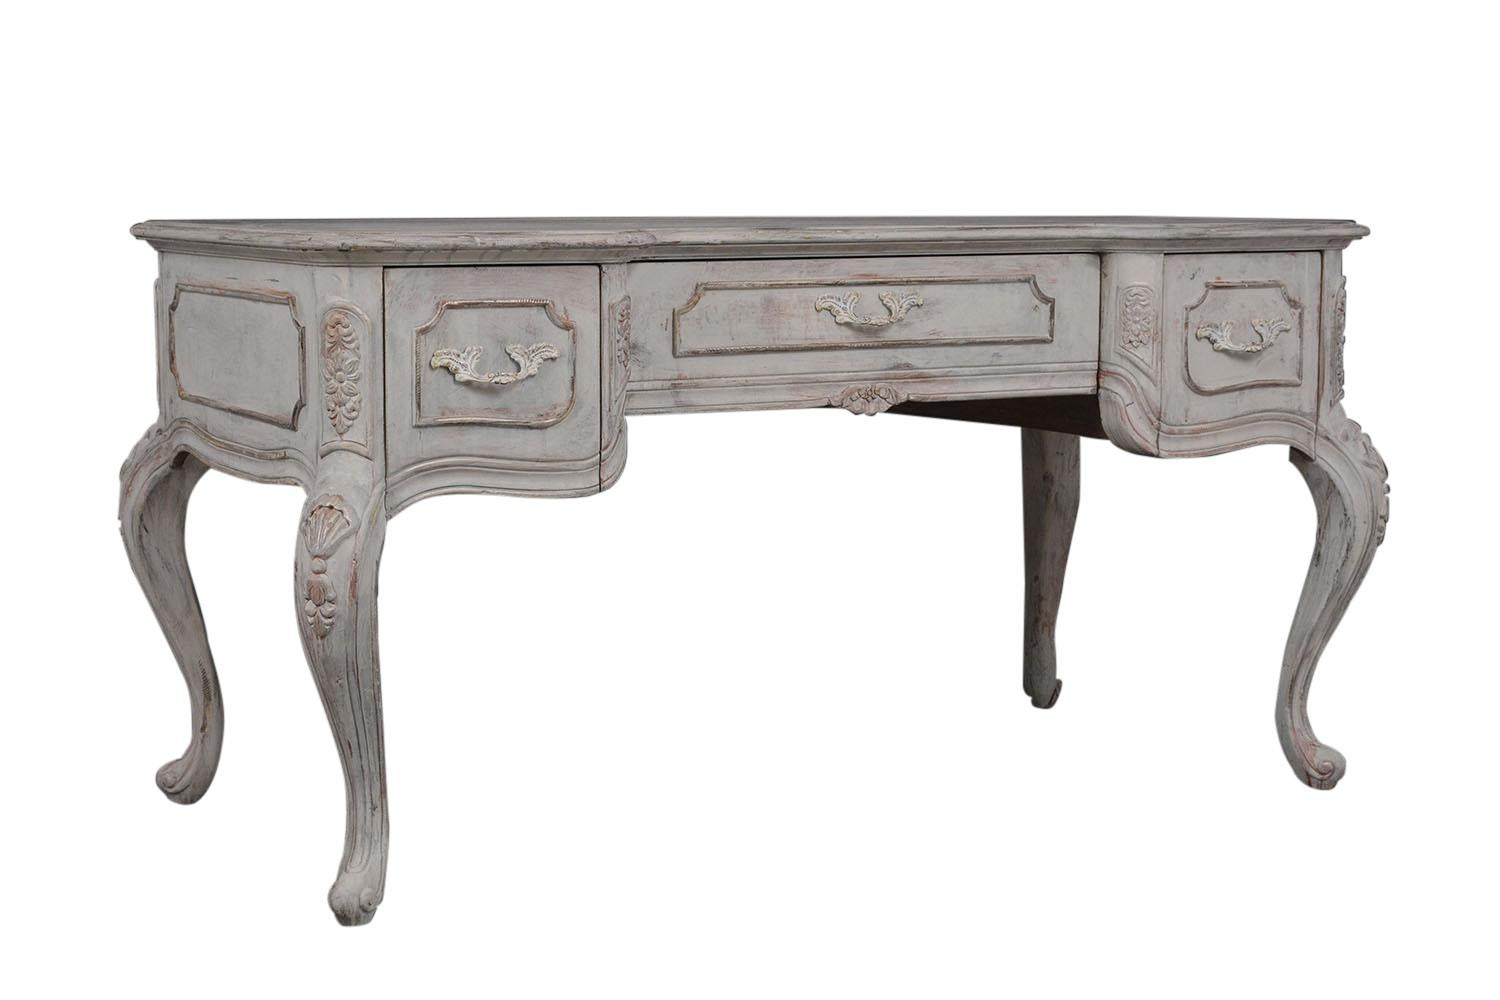 Diese Vintage Französisch Louis XV Schreibtisch ist aus massivem Holz gefertigt und wurde neu lackiert in einem off graue Farbe mit einem schönen Hand-done notleidenden Finish. Der Schreibtisch verfügt über eine massive abgeschrägte Holzplatte::